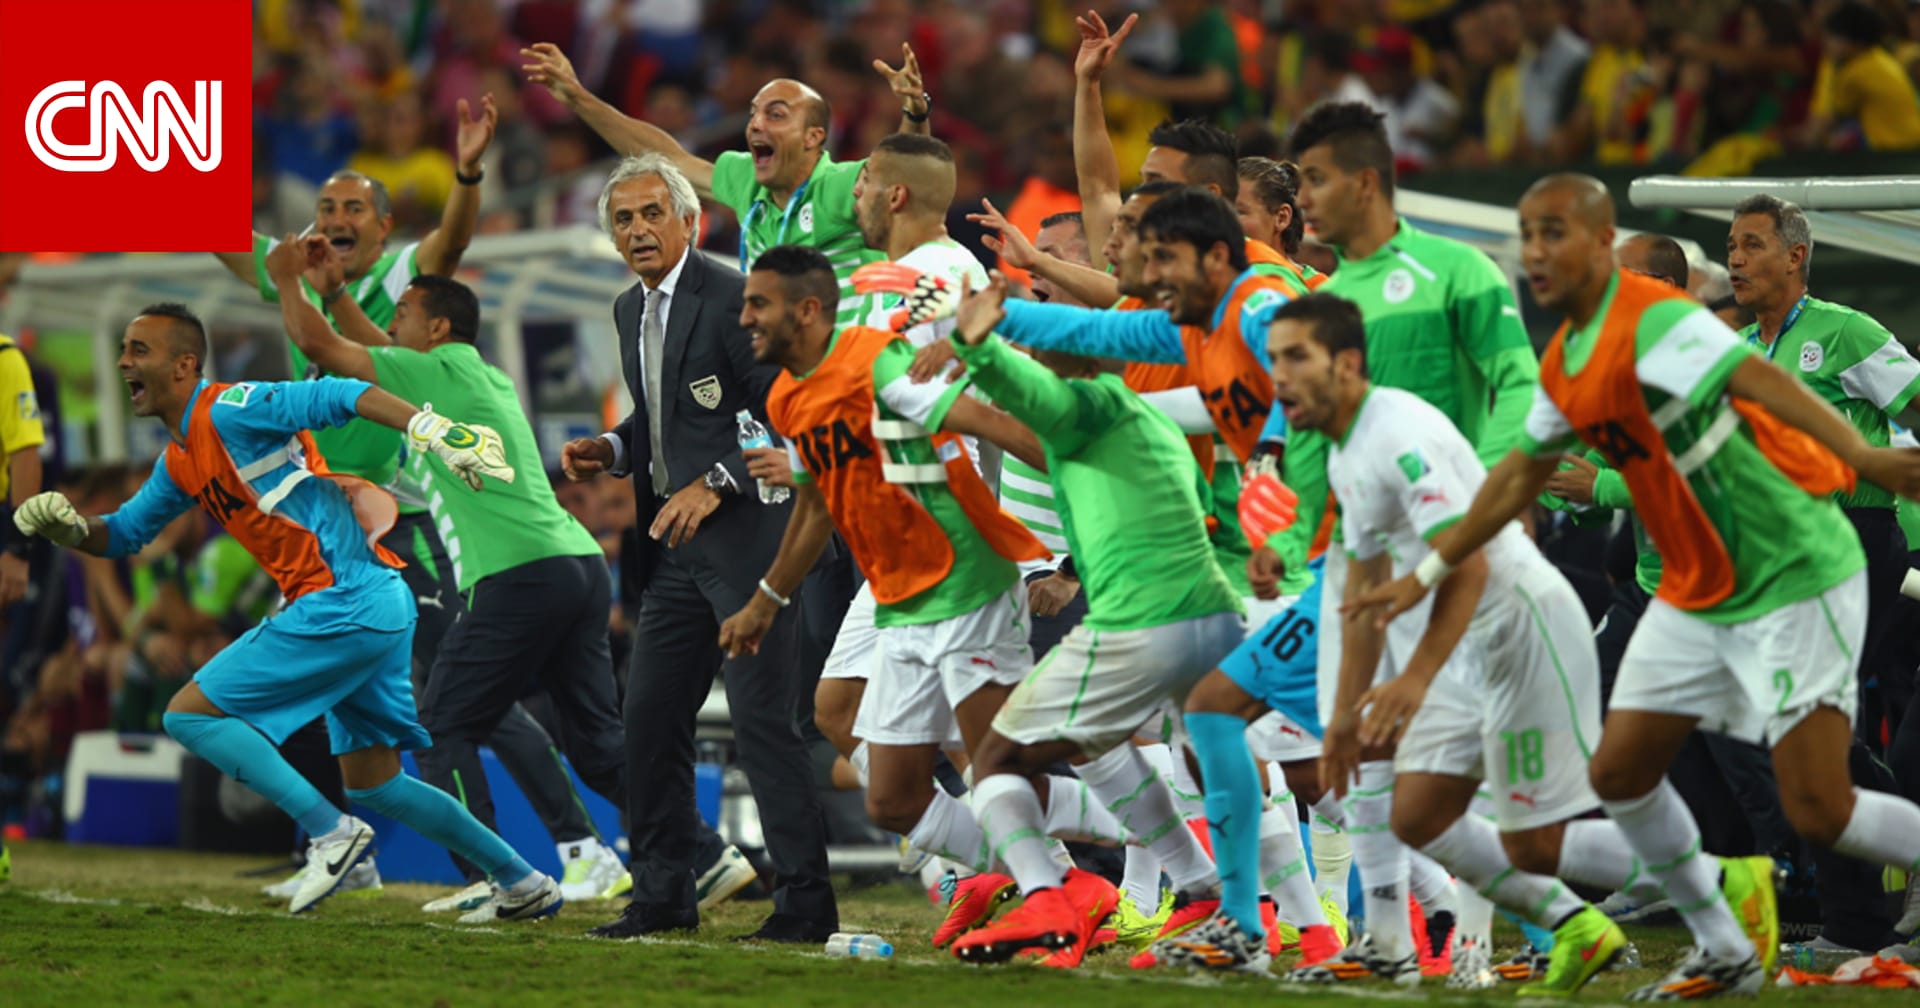 البرازيل 2014 منتخب الجزائر يتأهل لدور الـ16 لأول مرة بتعادل مع روسيا Cnn Arabic